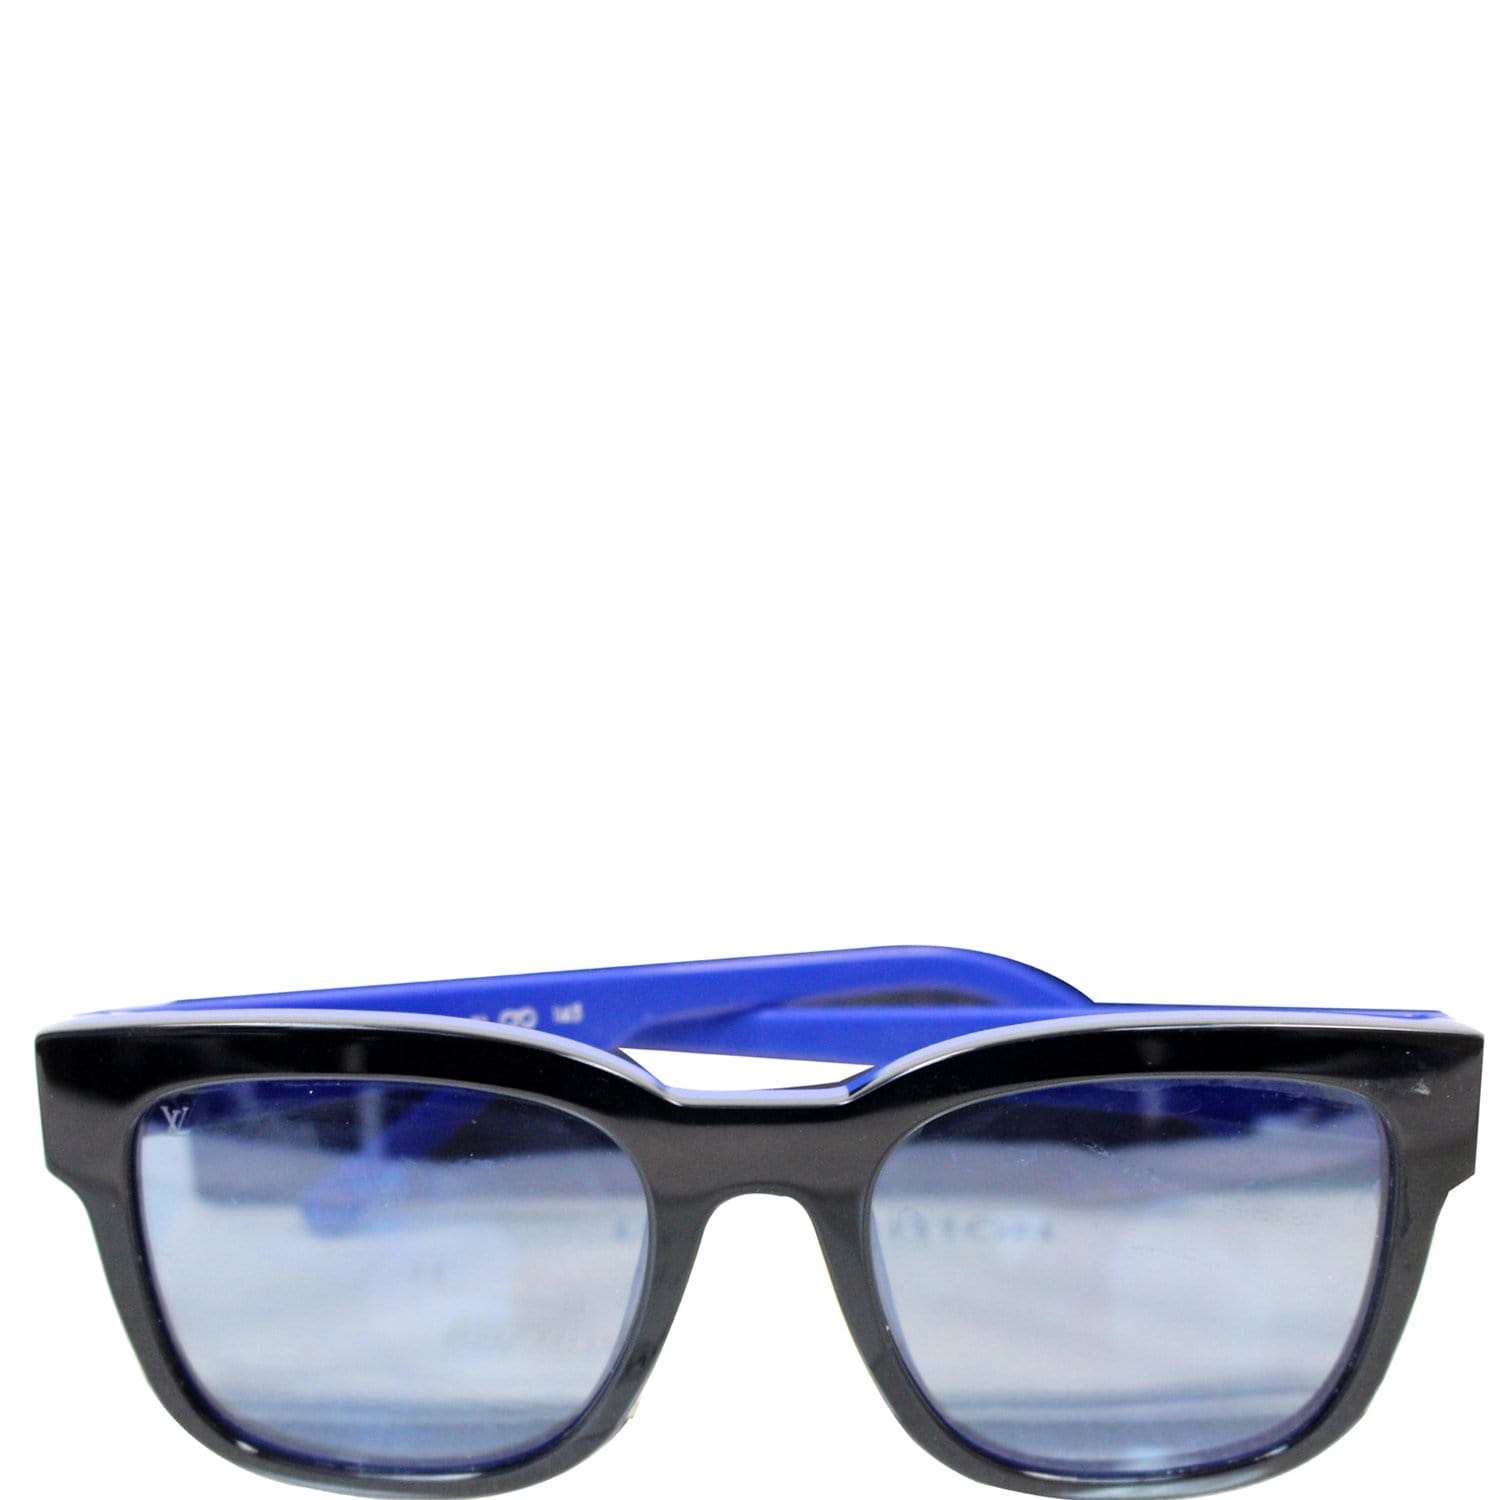 Men's Outerspace Sunglasses, LOUIS VUITTON